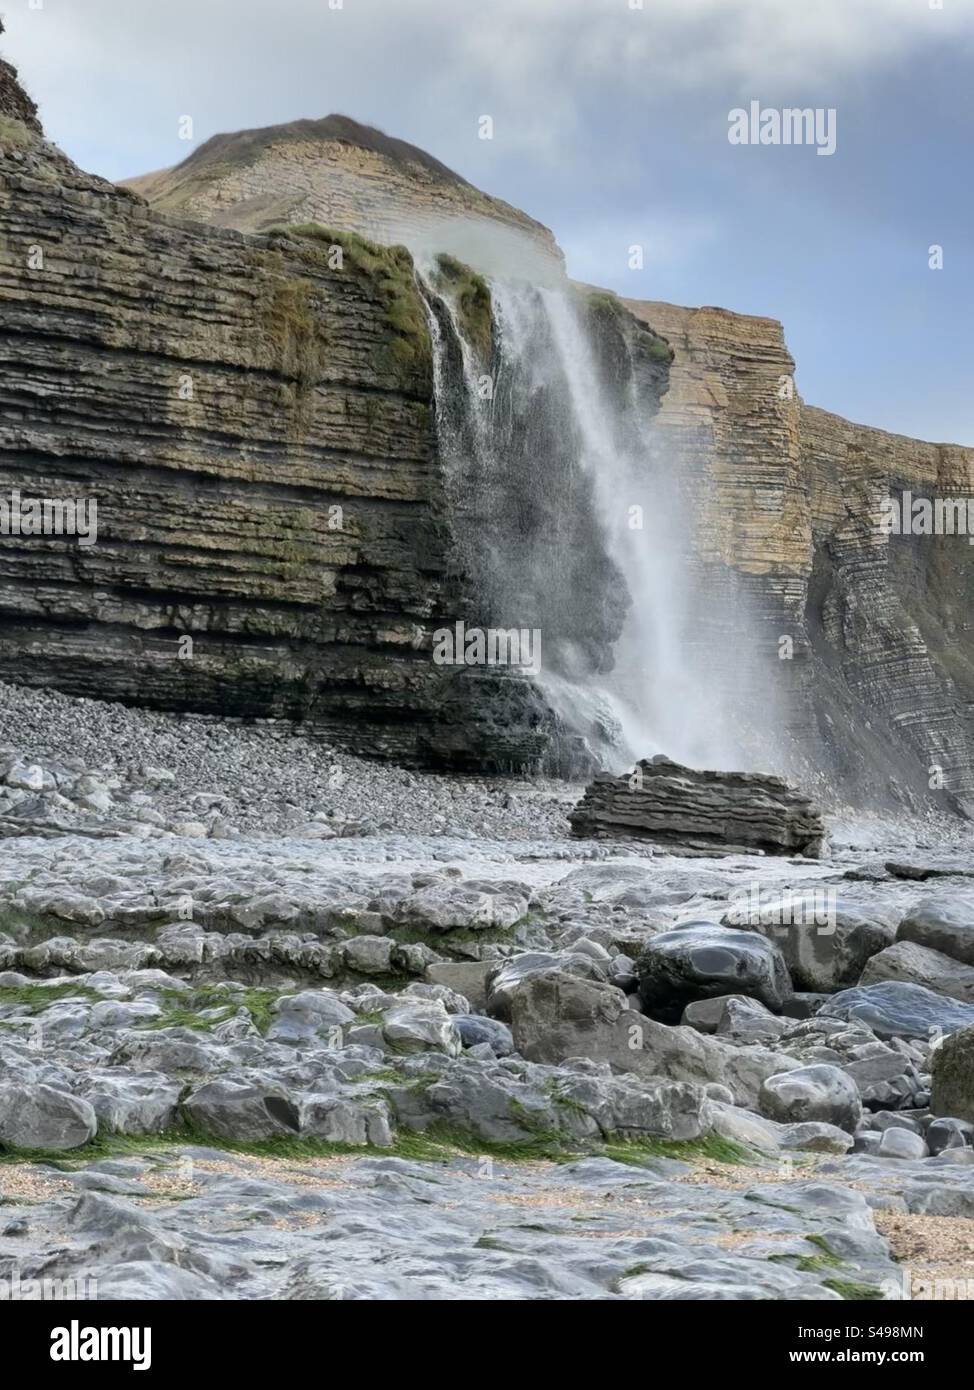 Wasserfall, während Nant Cwm Mawr über Klippen auf Traeth Mawr, Glamorgan Heritage Coast, Südwales stürzt, mit Wind, der das Wasser bergauf weht. Stockfoto